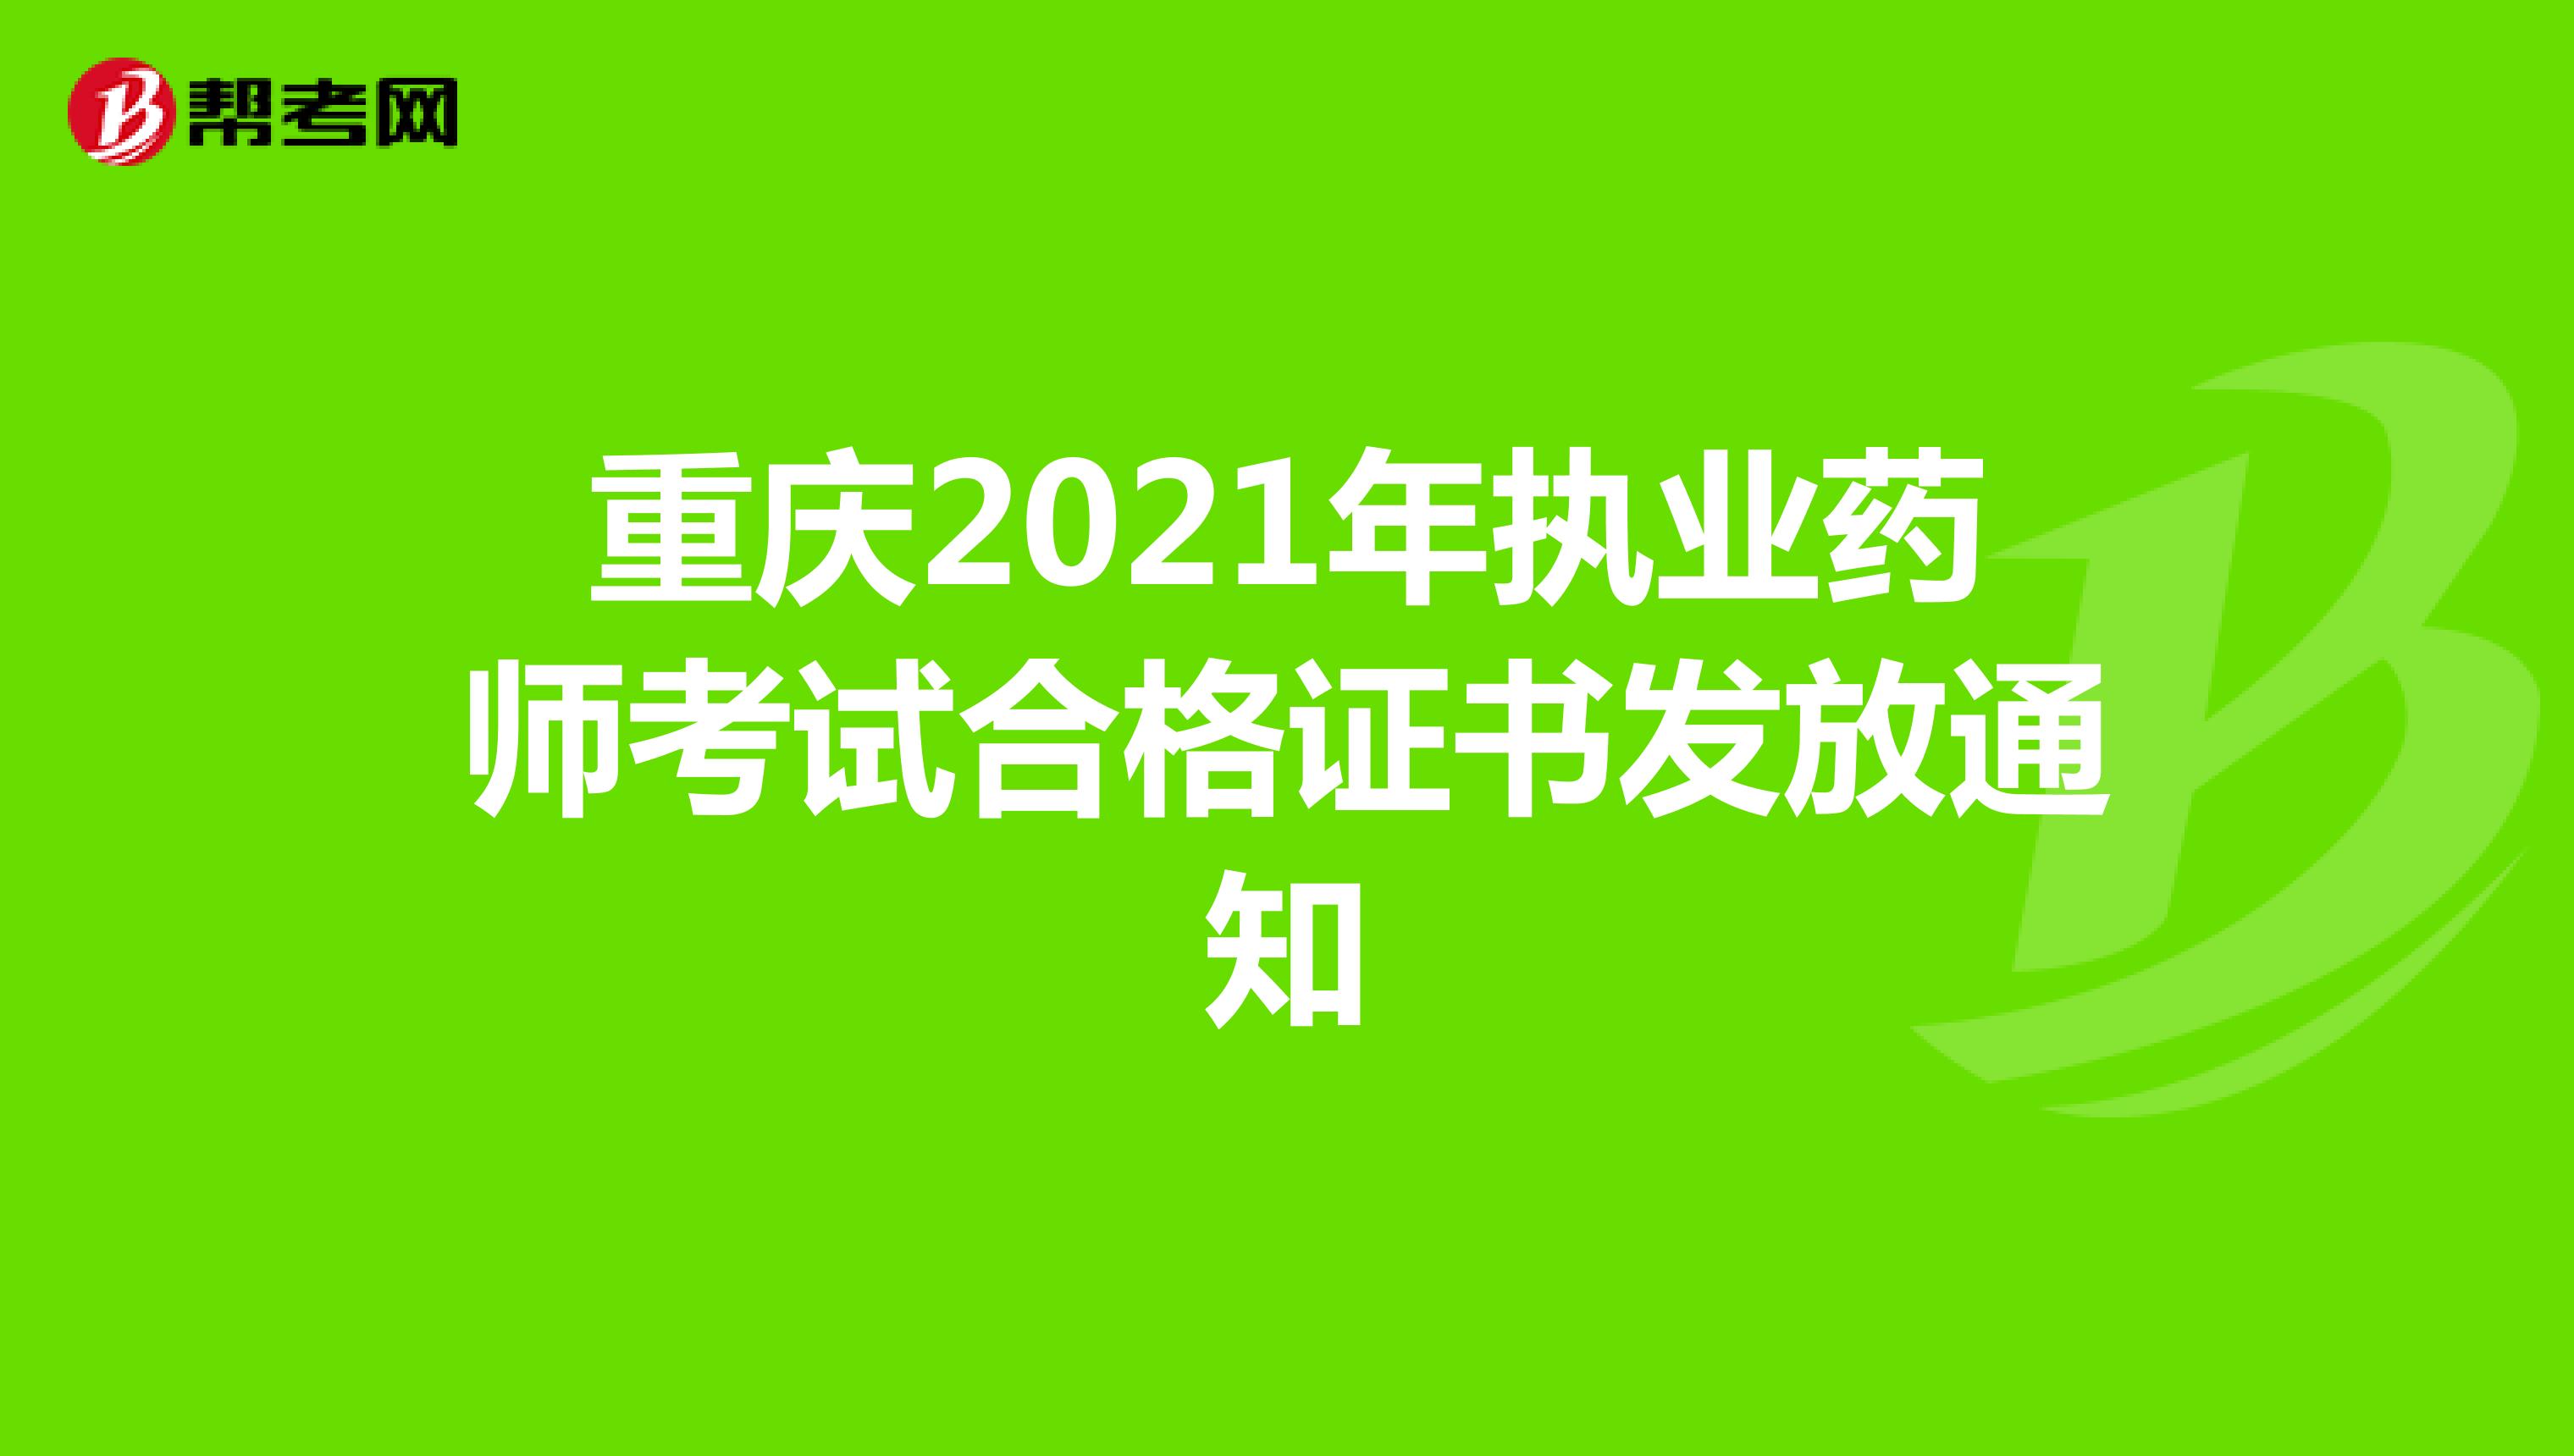 重庆2021年执业药师考试合格证书发放通知